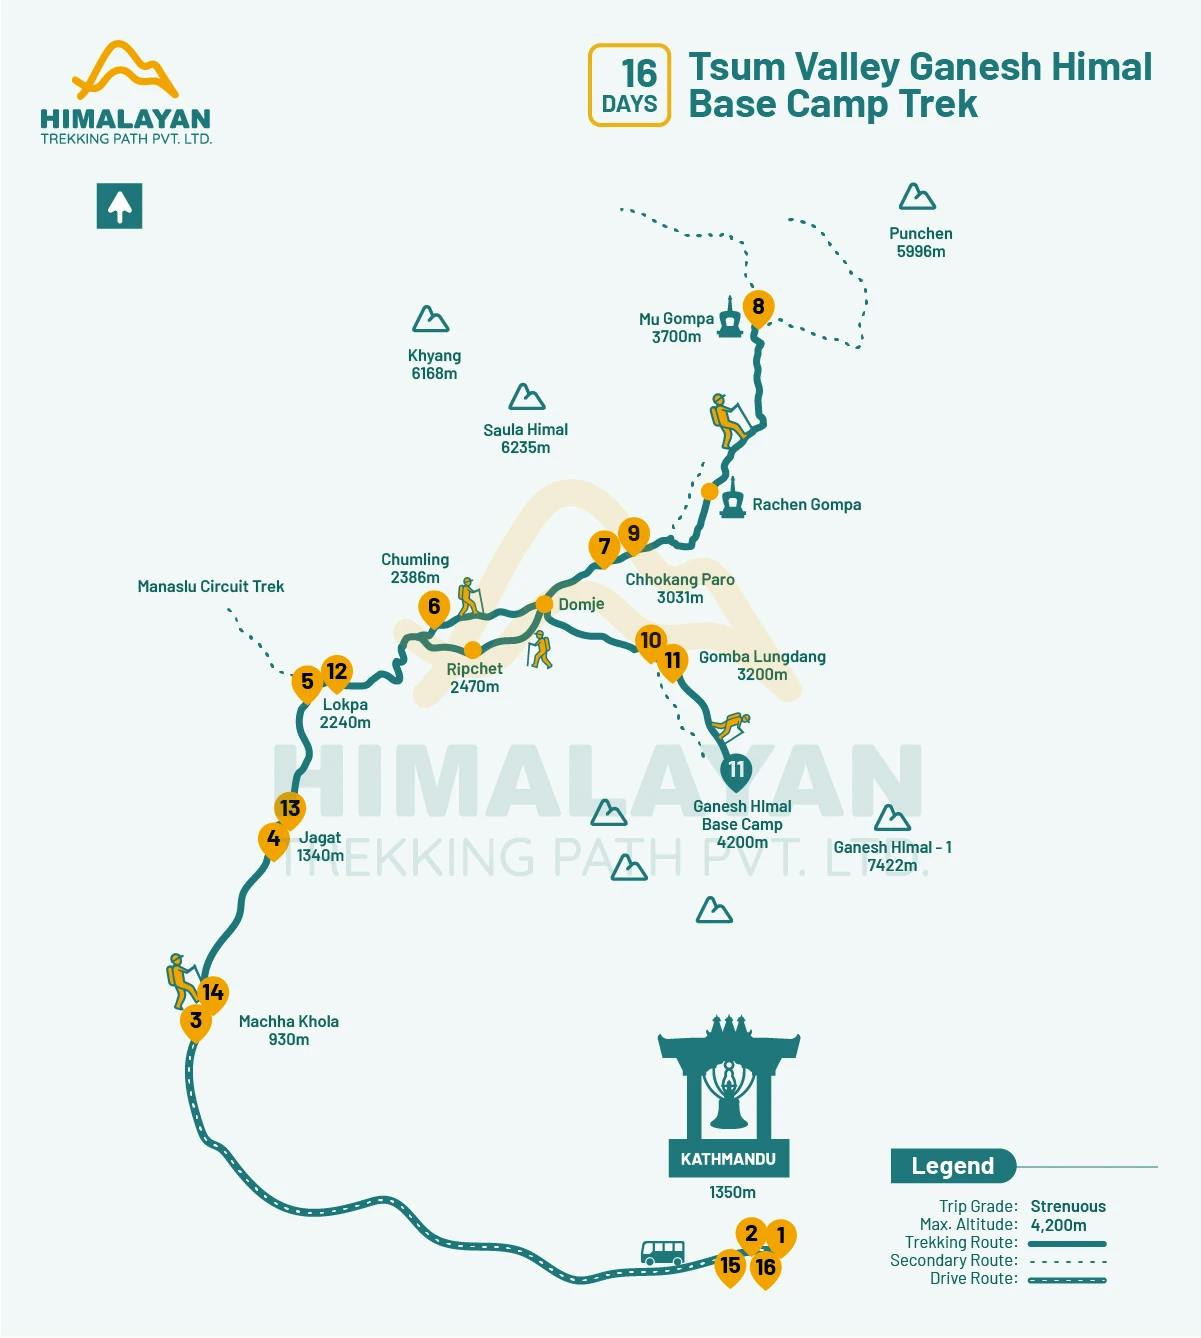 tsum-valley-ganesh-himal-base-camp-trek-map.webp